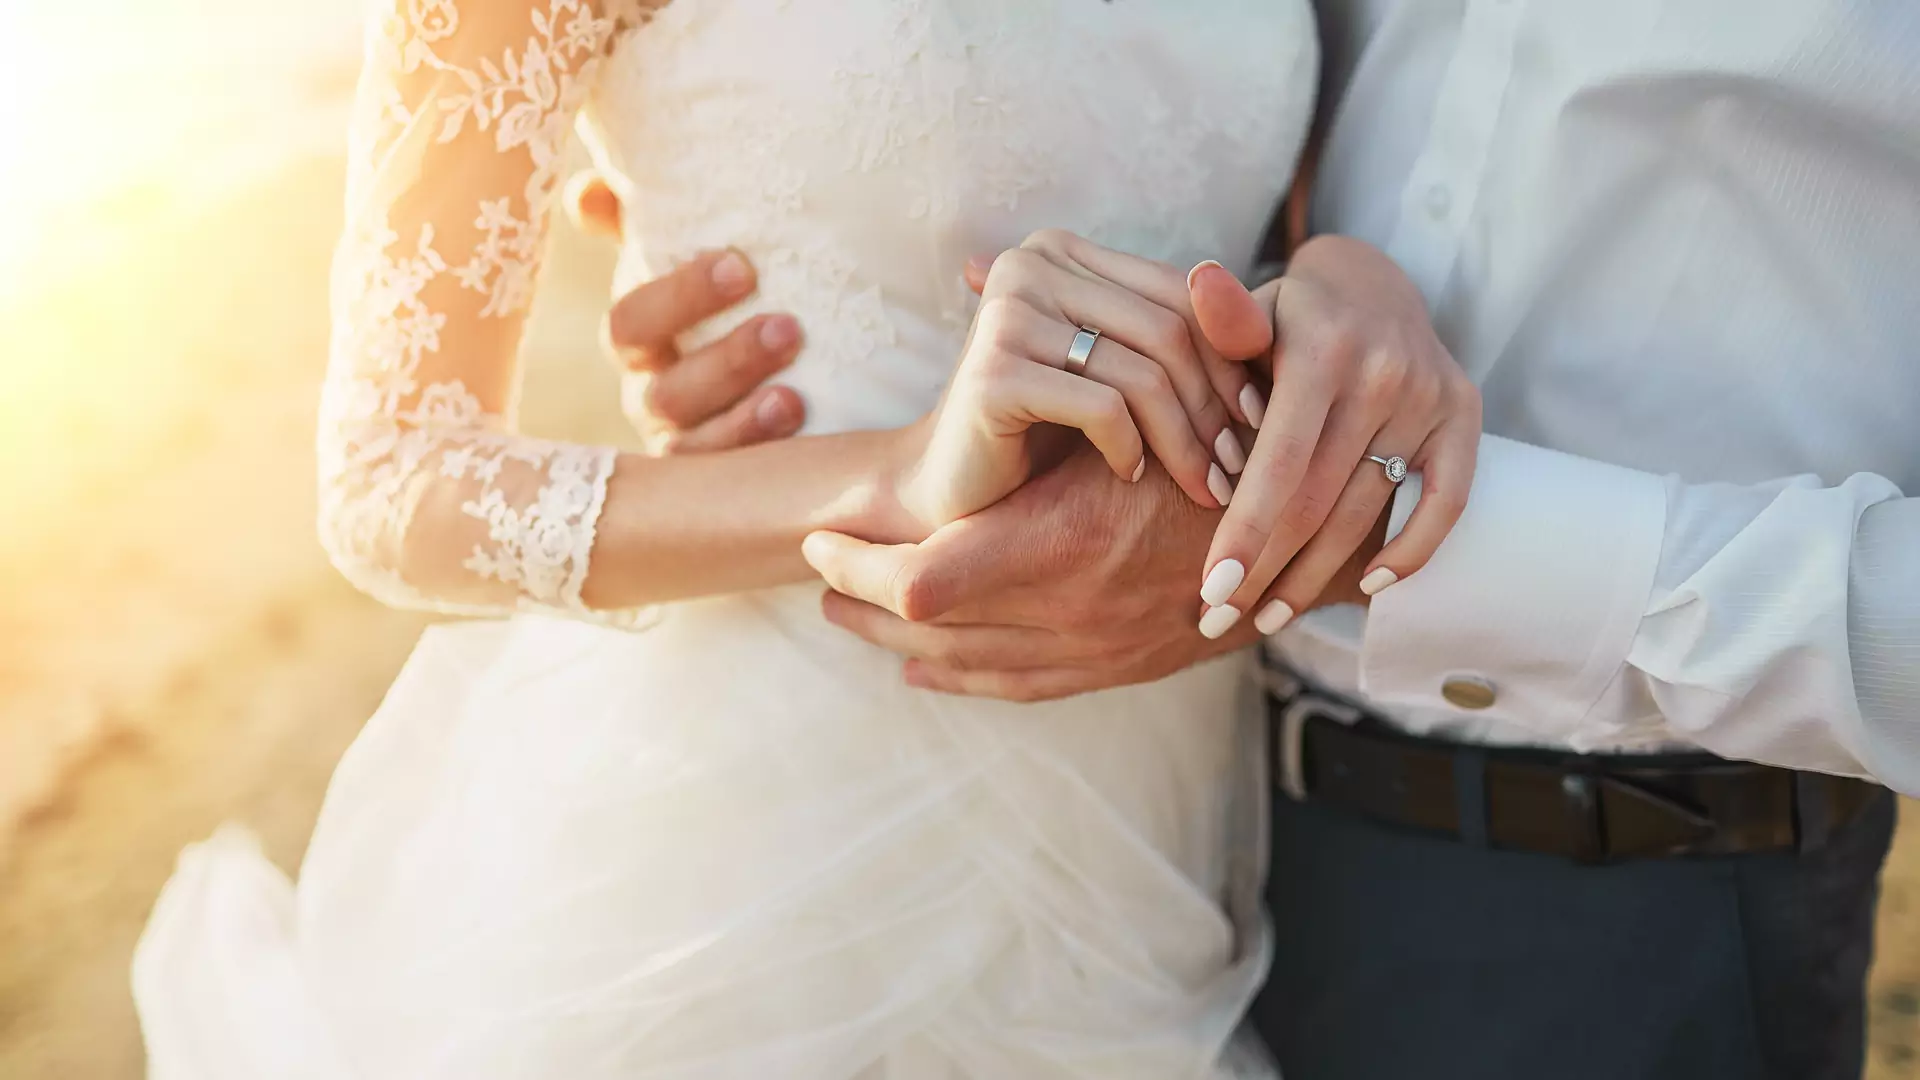 Co się dzieje z małżeństwem po śmierci? Duchowny odpowiada